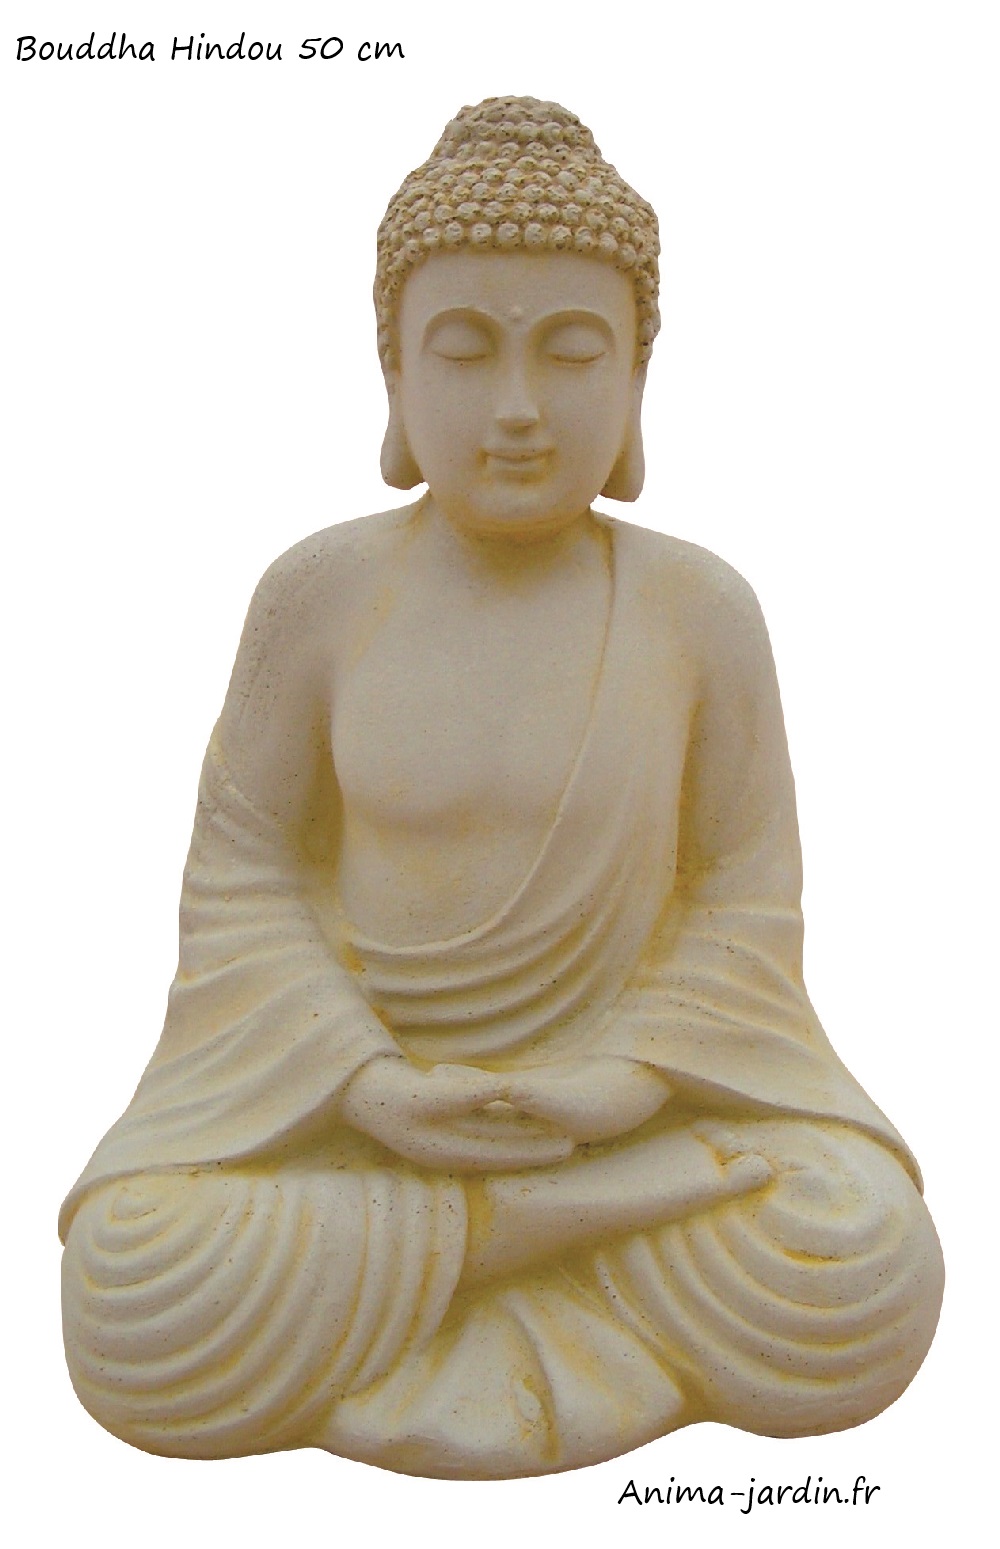 Bouddha 50 cm, Statue en pierre reconstituée, achat/vente